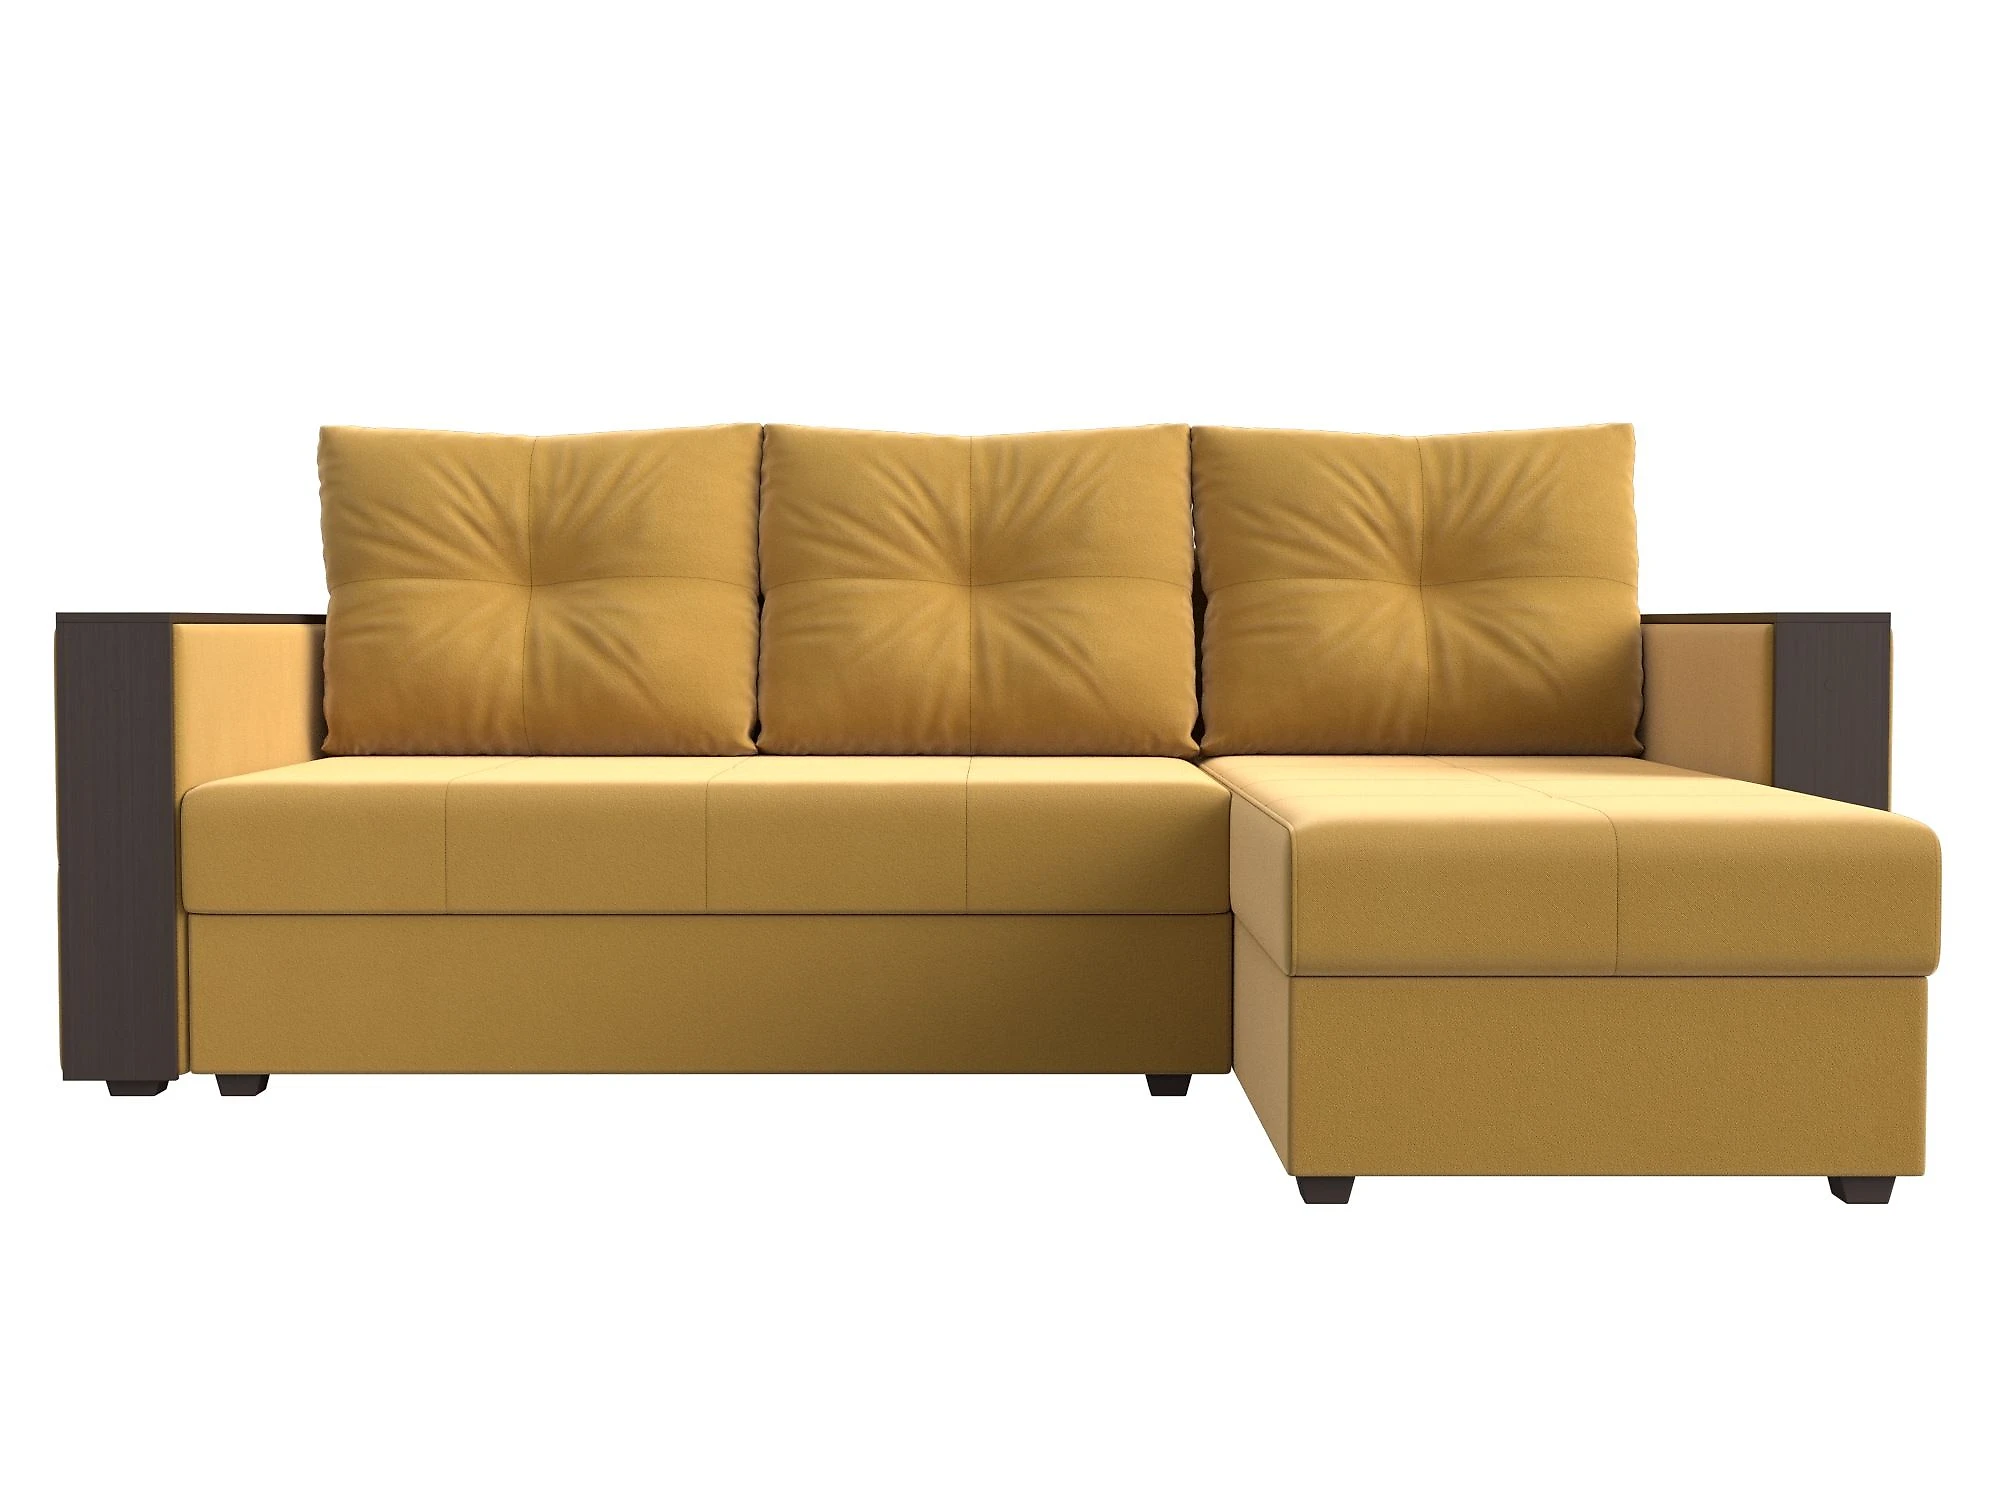 Односпальный угловой диван Валенсия Лайт Дизайн 3